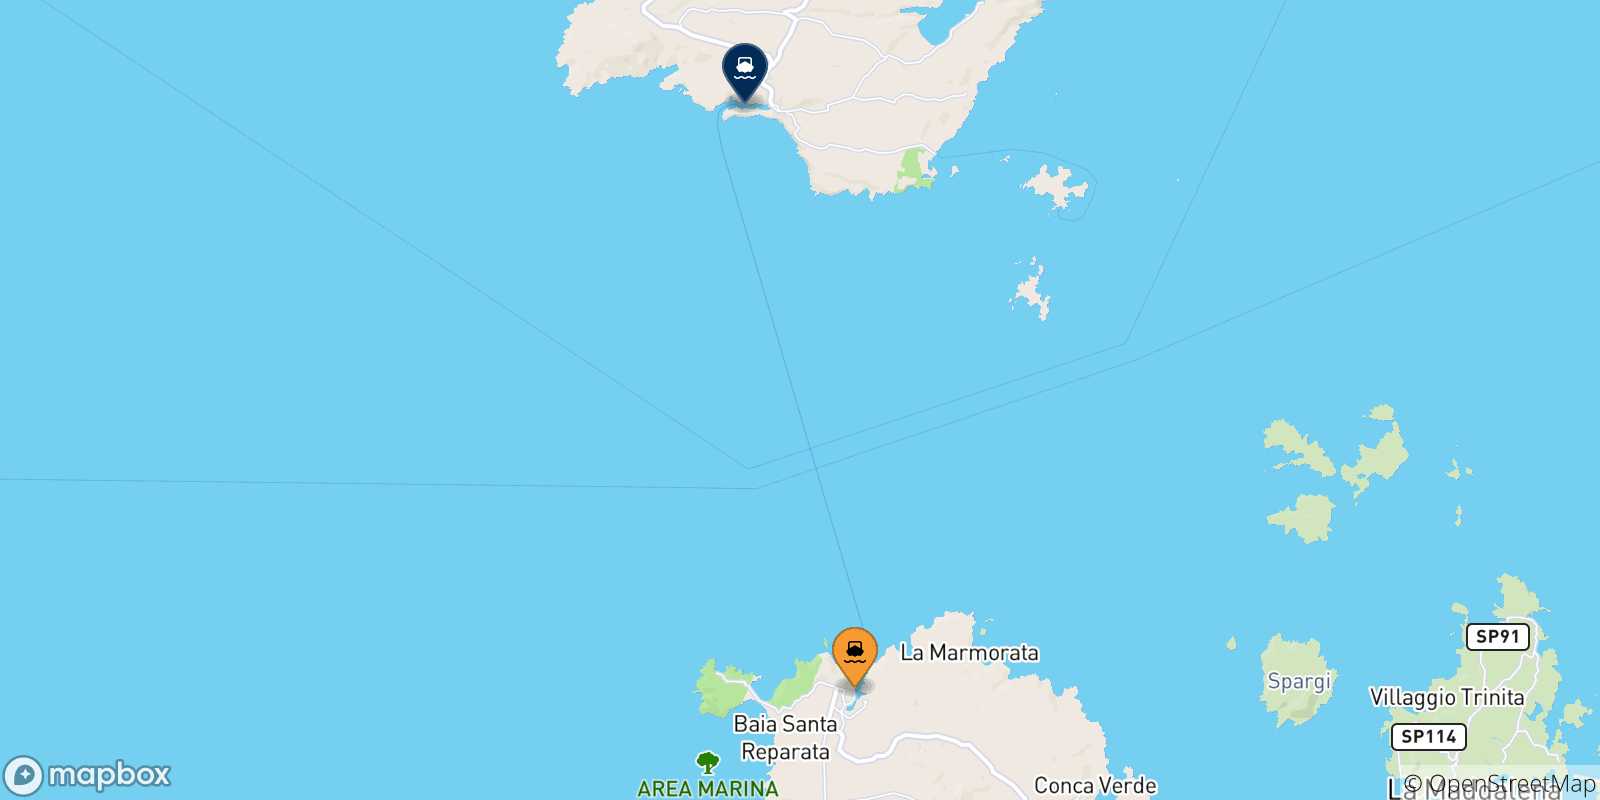 Mapa de las posibles rutas entre Cerdeña y  Bonifacio